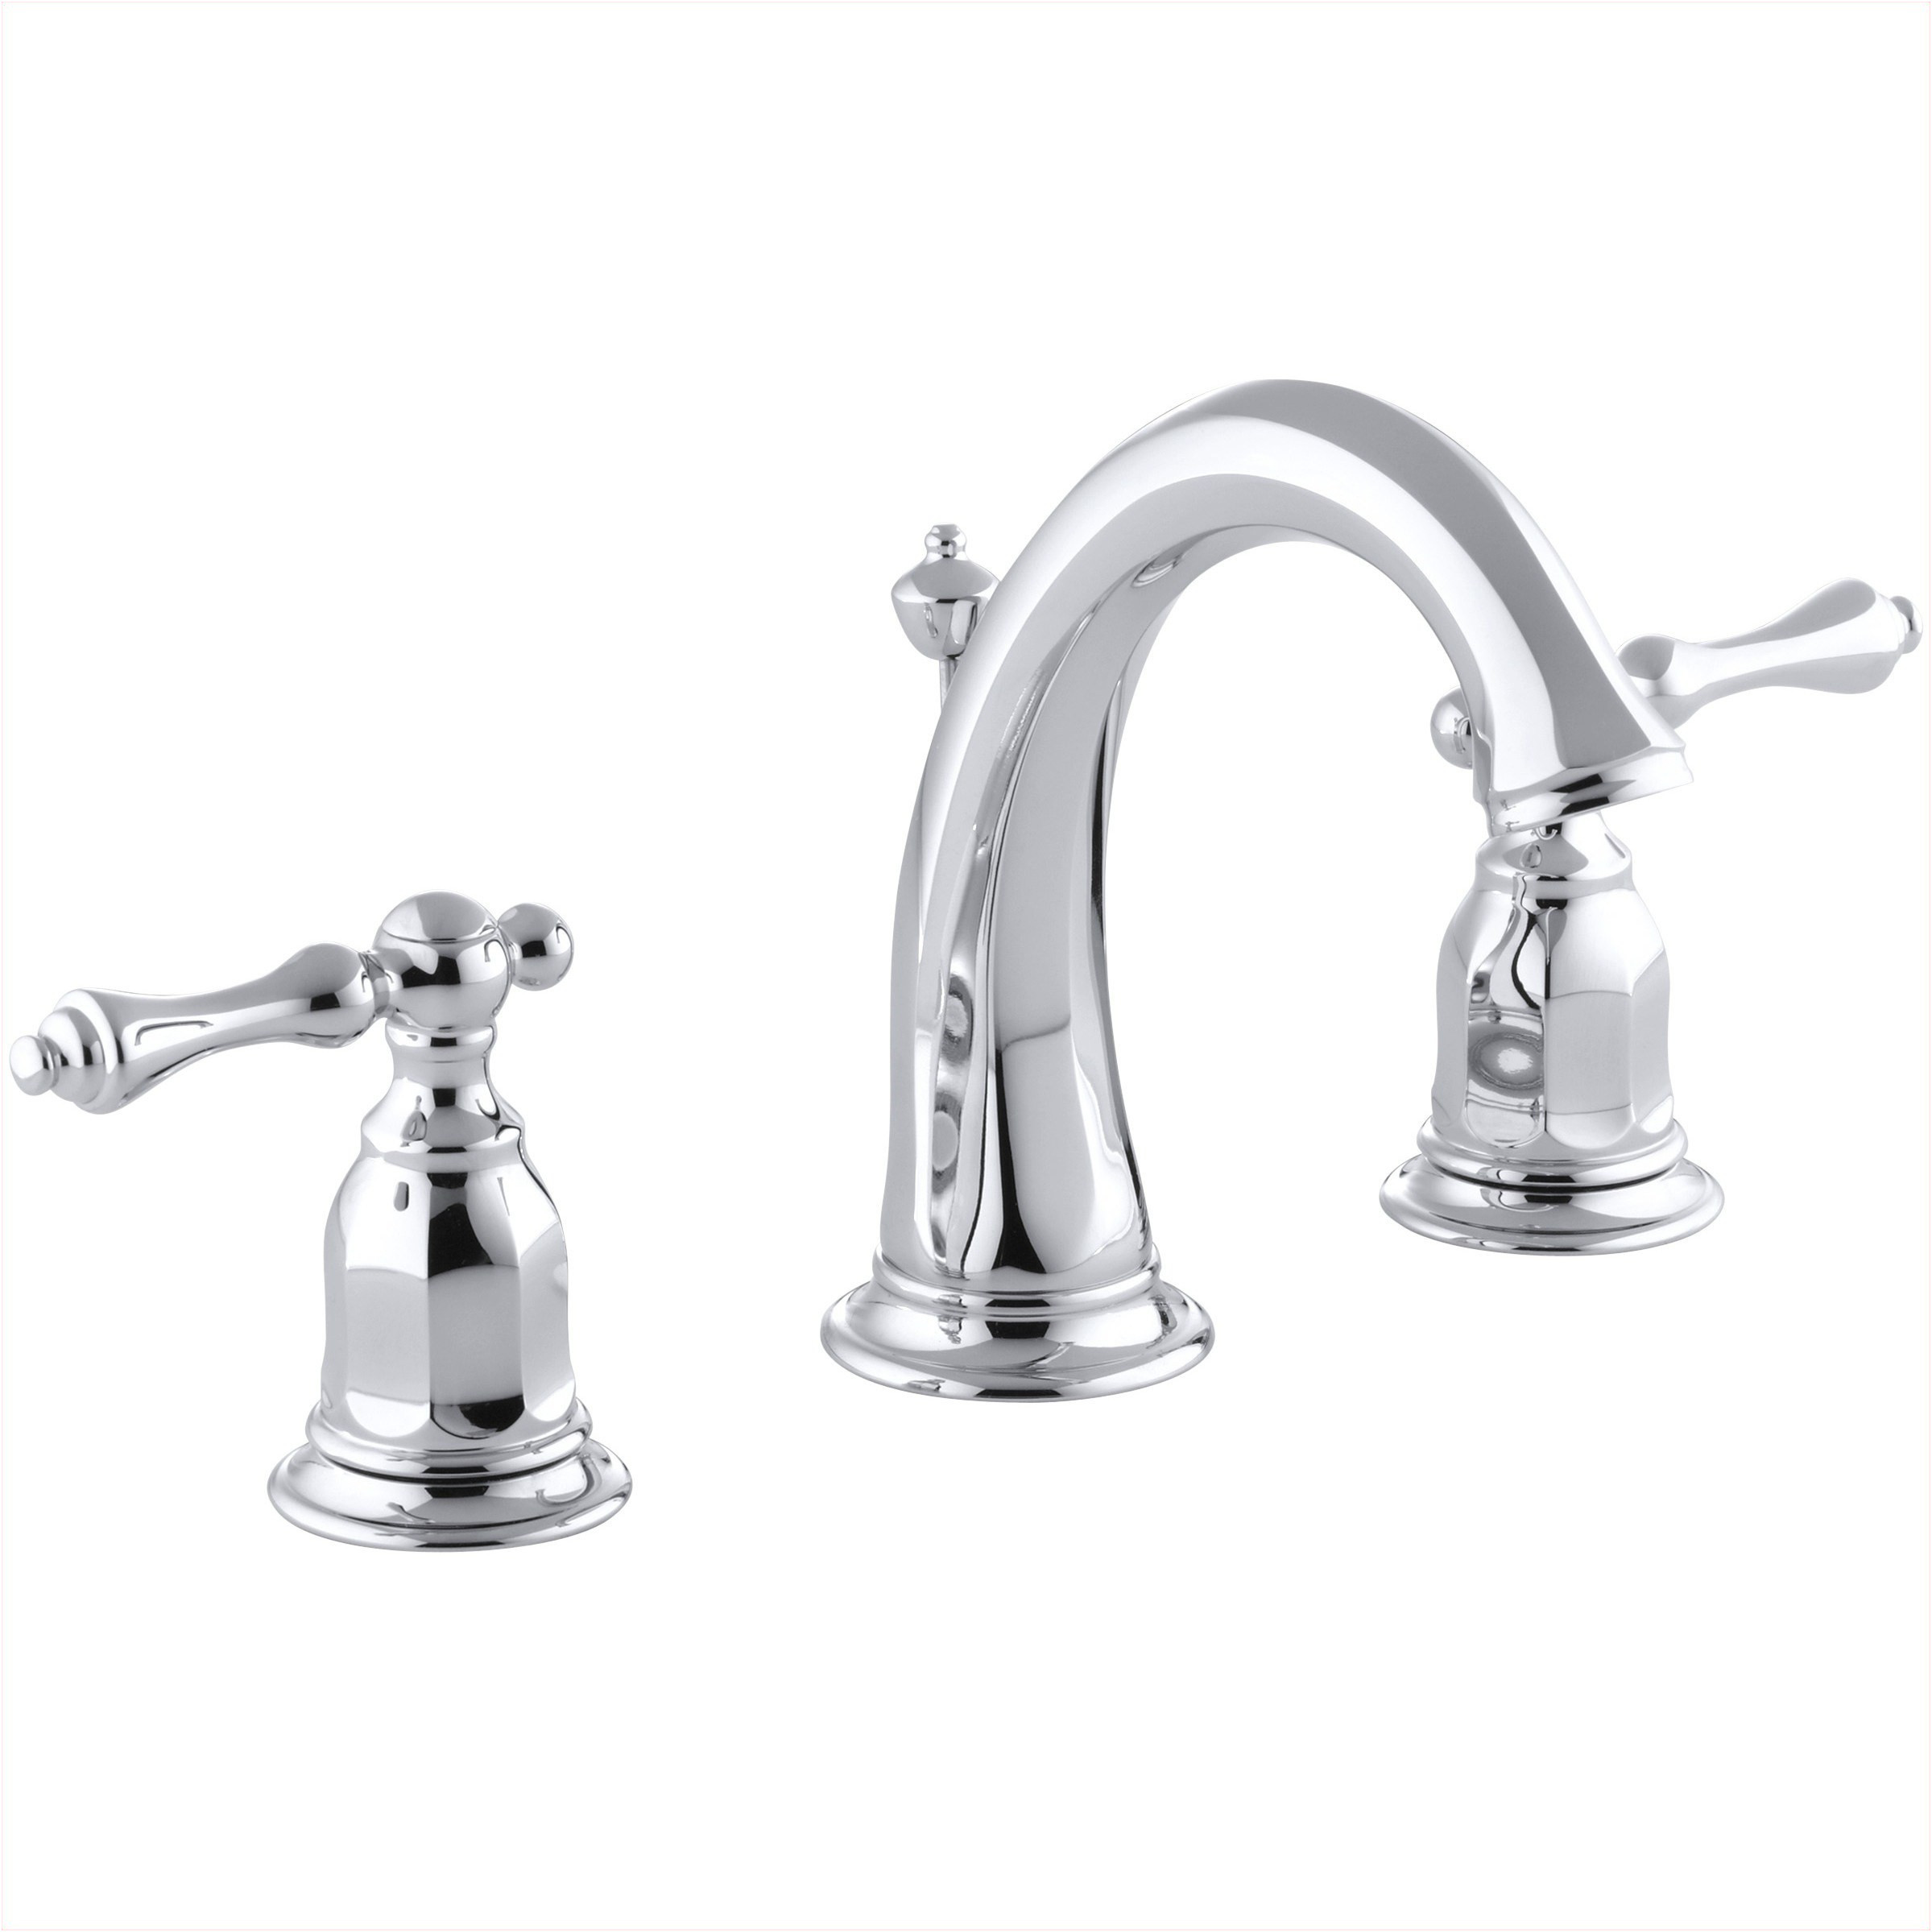 Unique Moen Brass Bathroom Sink Faucets